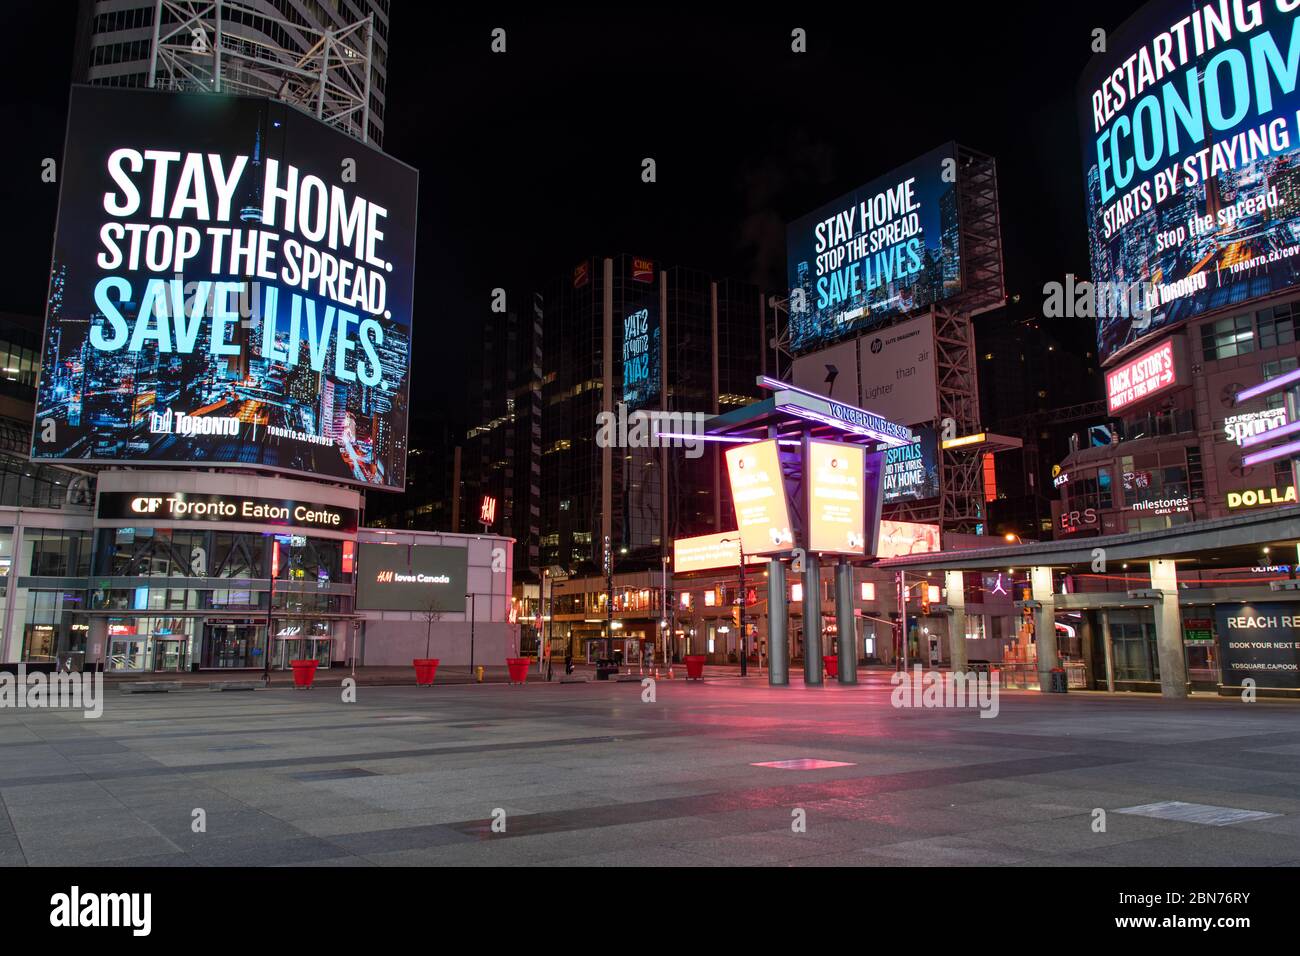 La piazza Young-Dundas di Toronto è vuota, con i cartelloni digitali che si legge "resta a casa. Arrestare la distribuzione. Salvare vite umane". Durante la pandemia COVID-19. Foto Stock